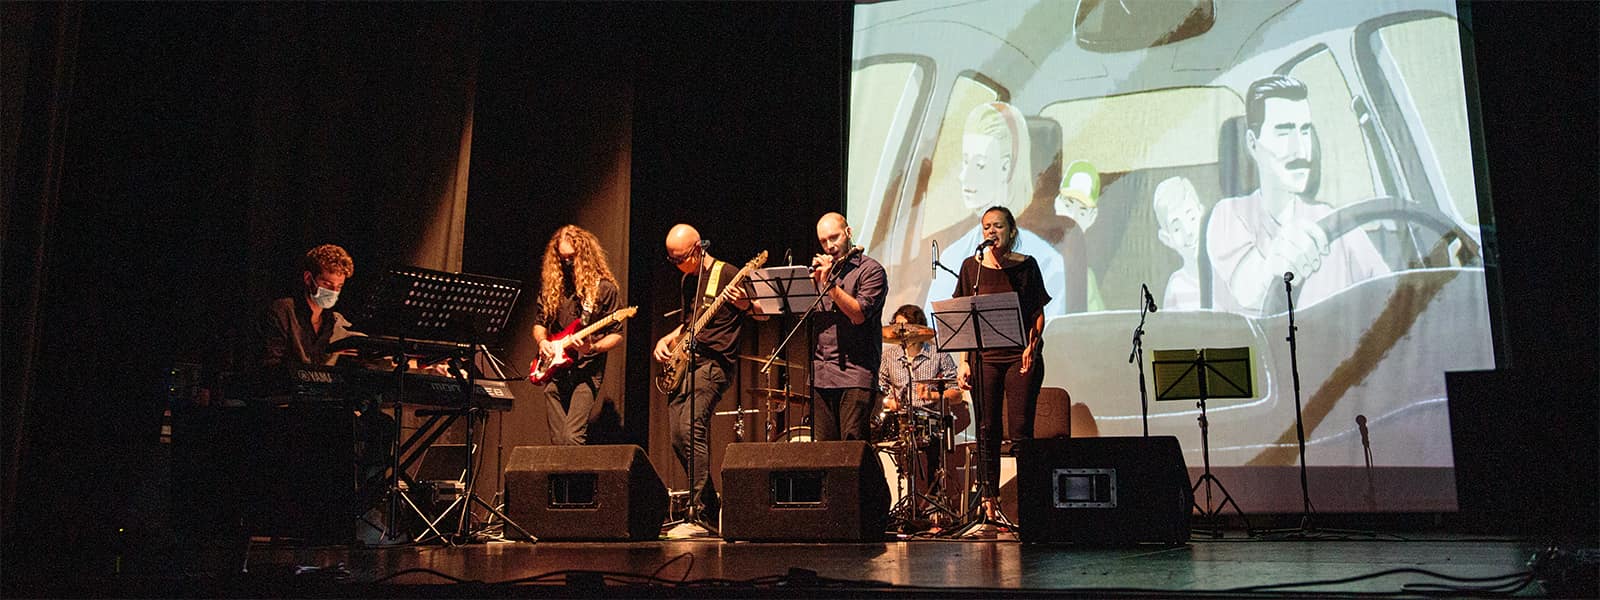 La formazione Ariodante dell'Associazione Examina di Gorizia live sul palco